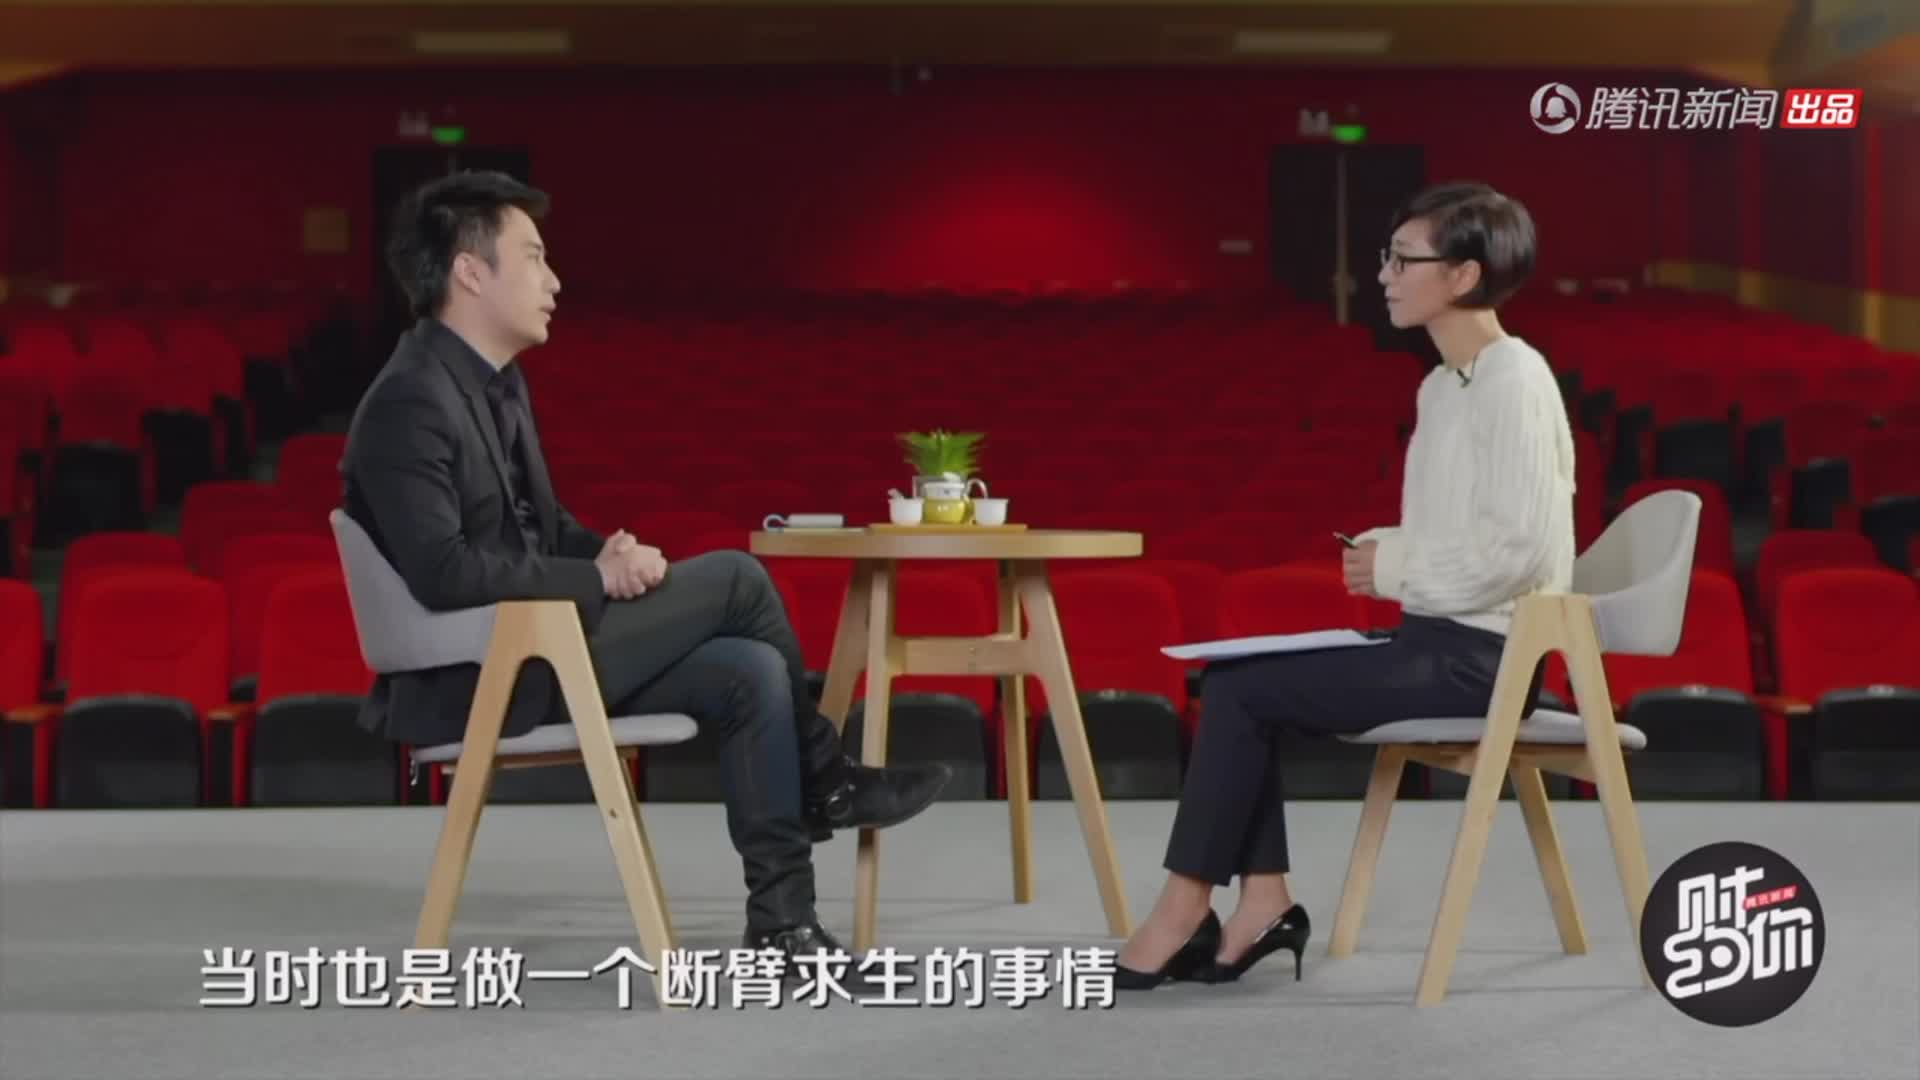 刘强东：有些平台赚取的就是假货的钱　陈欧：我听出他对一些人的攻击